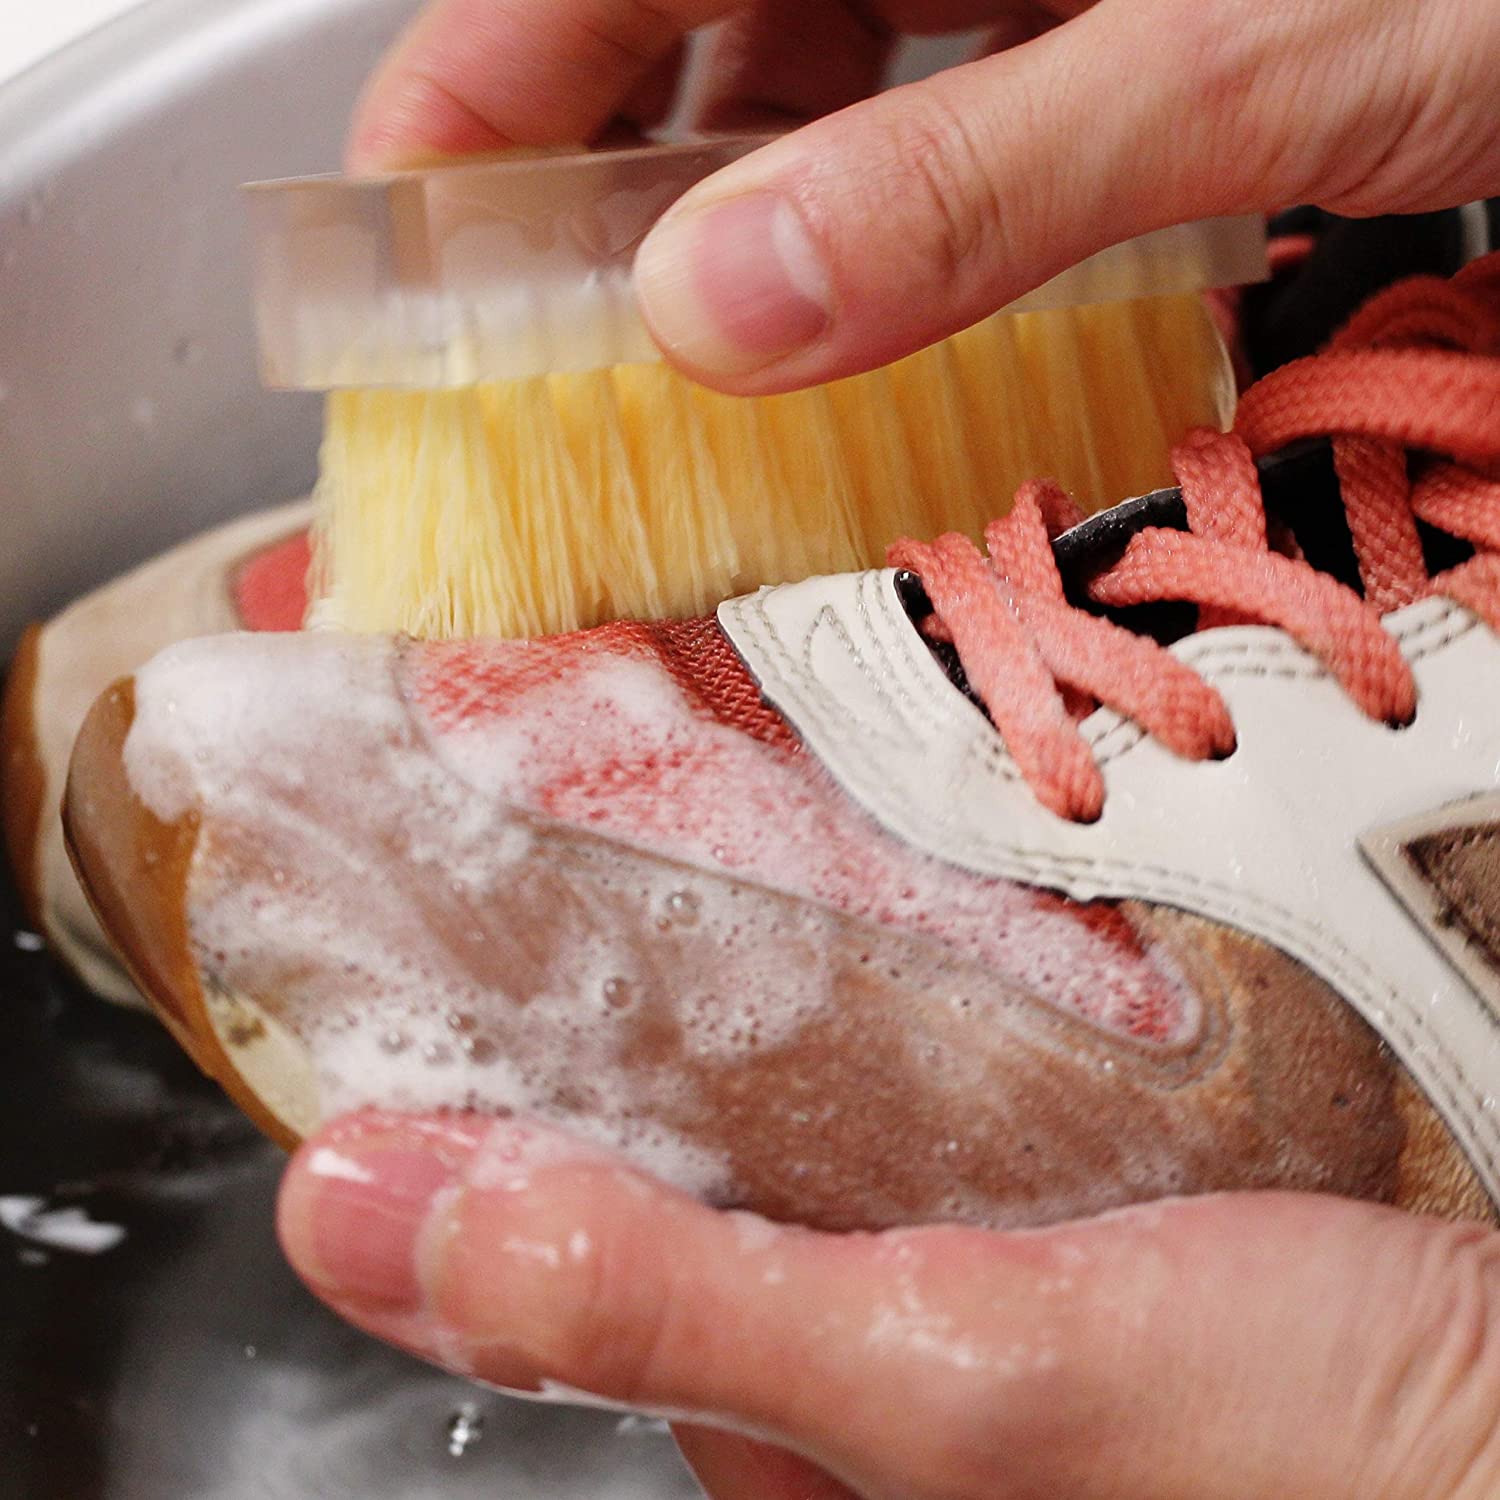 「綿や麻素材の靴」には水を使って洗うタイプ